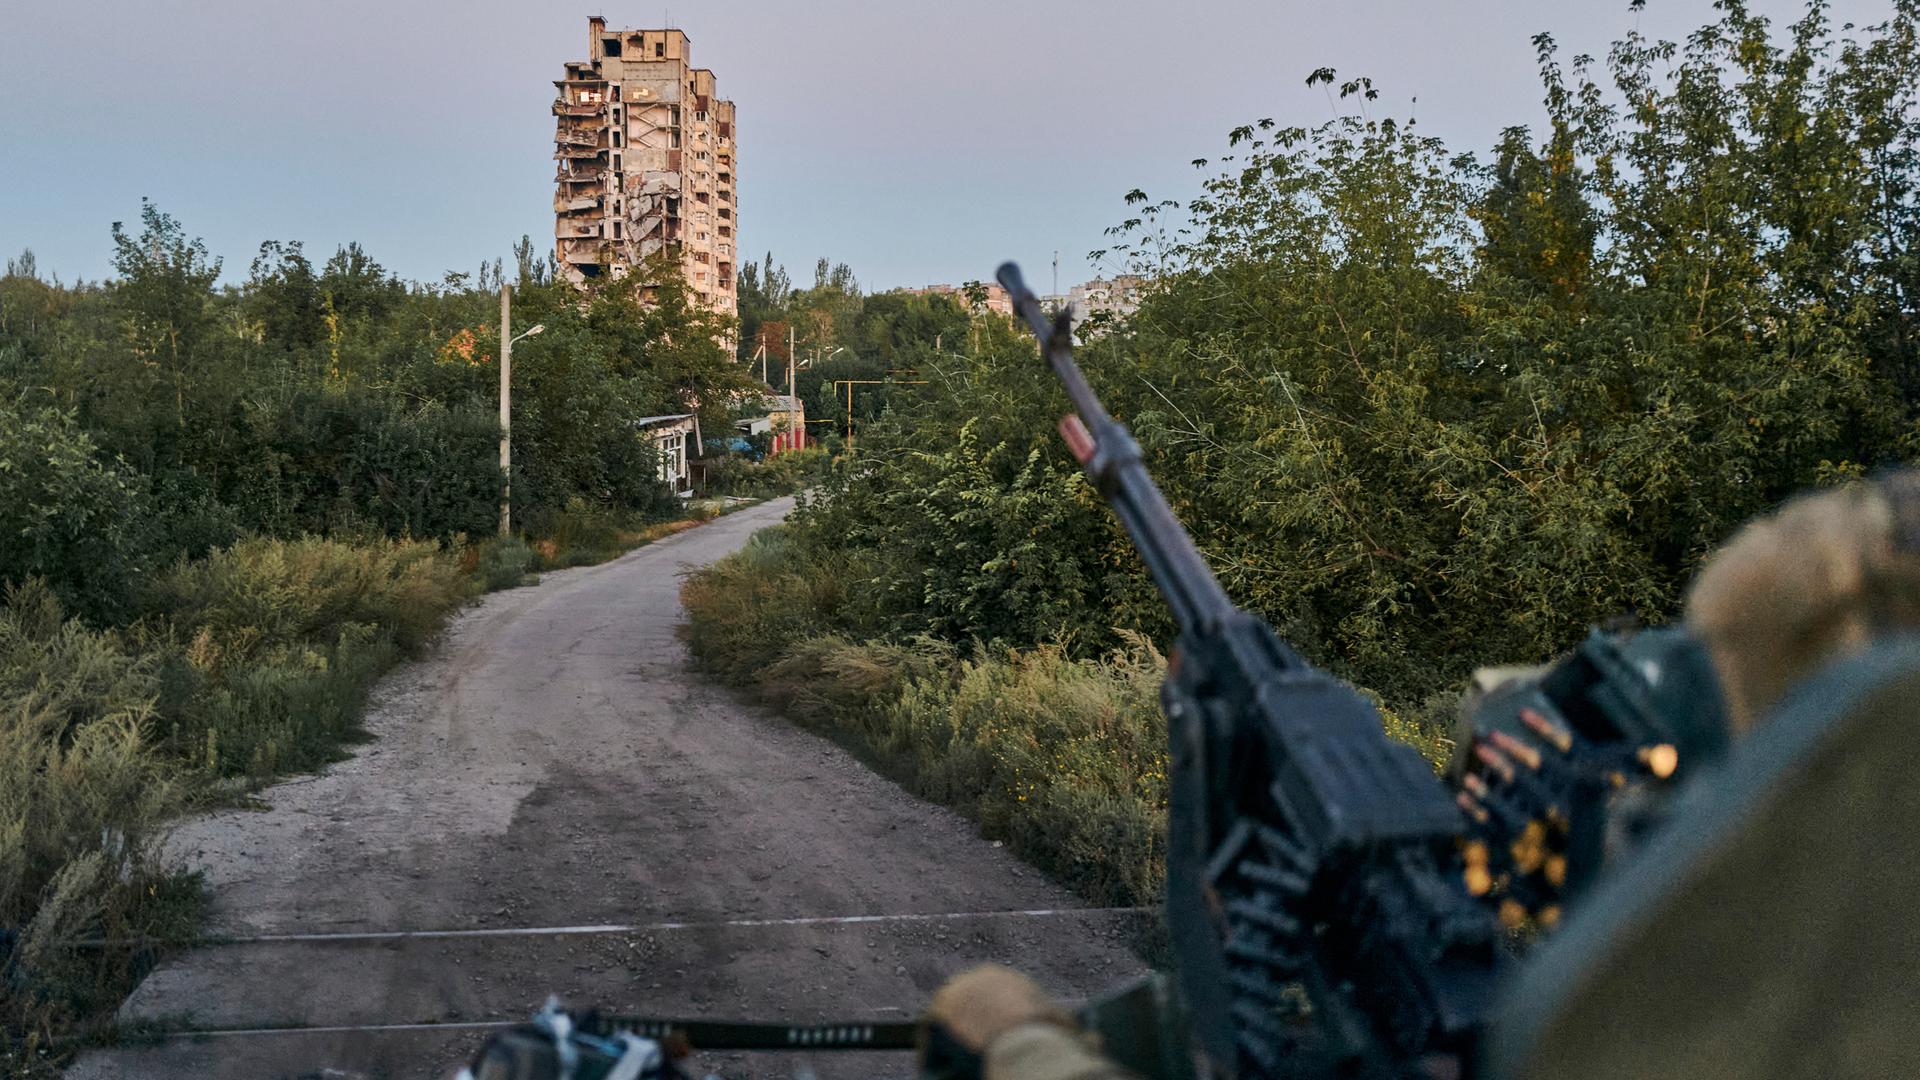 Ein Maschinengewehr ragt im Vordergrund unscharf ins Bild, im Hintergrund ist ein einzelnes Hochhaus vor einem Feldweg zu sehen.